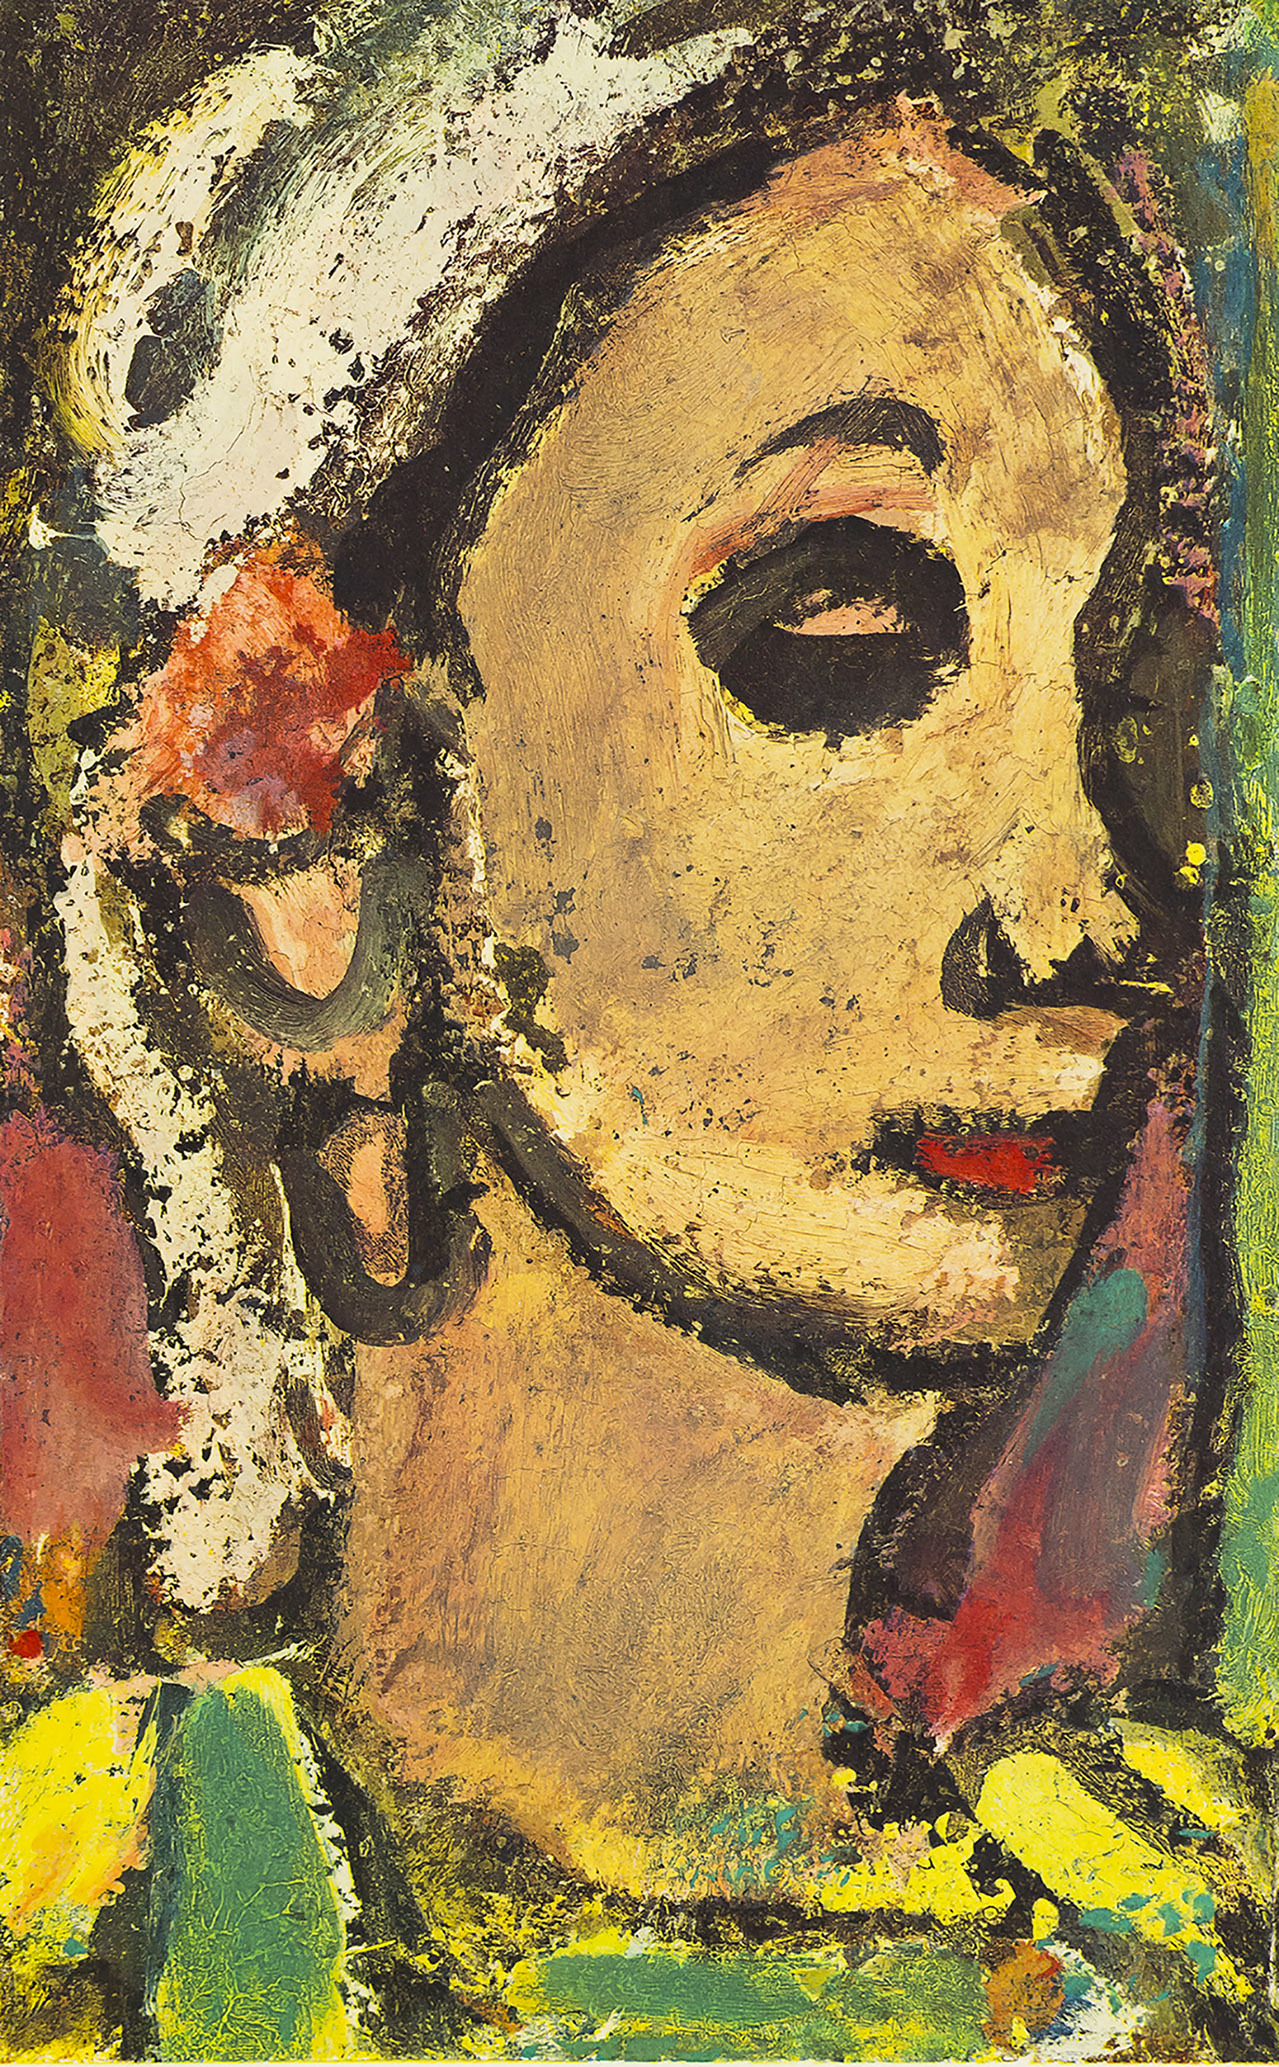 会期①出品作品：扉絵 《ソランジュ》(『ヴィザージュ』1)、 ジョルジュ・ルオー《ソランジュ》(1935-39)に基づく複製画、 ジョルジュ・ルオー財団、パリ